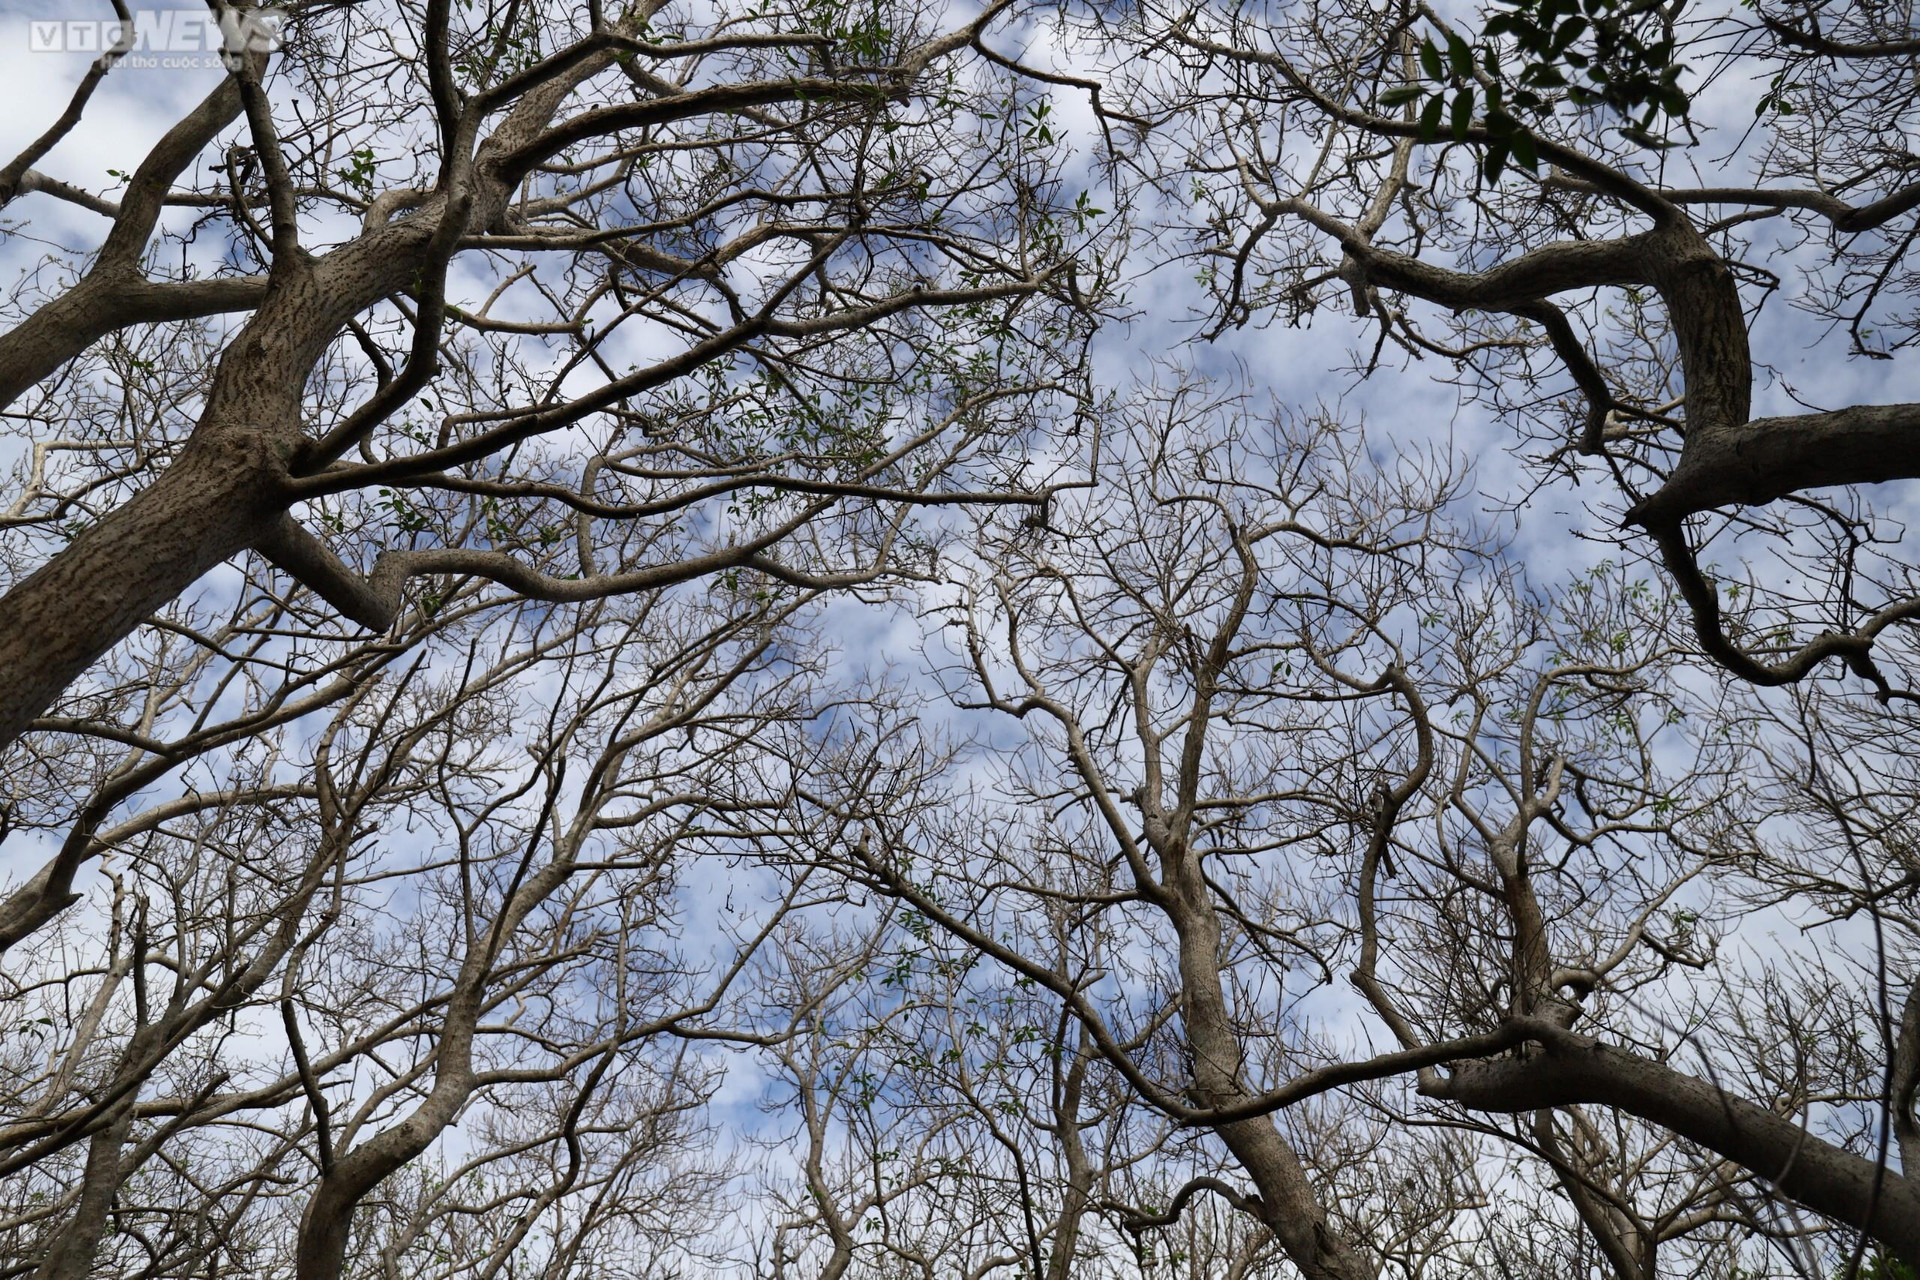 Năm nay, rừng Rú Chá bước vào mùa thay lá sớm hơn thường lệ. Cả cánh rừng dần chuyển từ màu xanh sang vàng, rồi bao trọn một không gian rộng lớn với gam màu trắng xám, trên là bầu trời xanh ngát tạo nên một bức tranh phong cảnh đẹp đến nao lòng. (Ảnh: N.T)